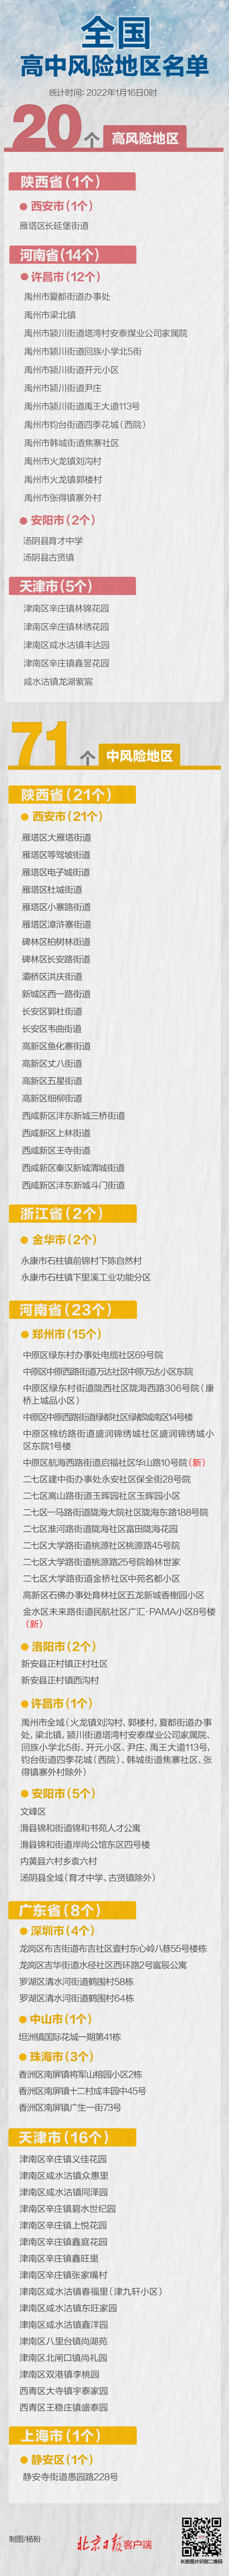 受台风影响广东多地客运停运 1600多公交班次取消 - Baidu Search - Peraplay.Org 百度热点快讯